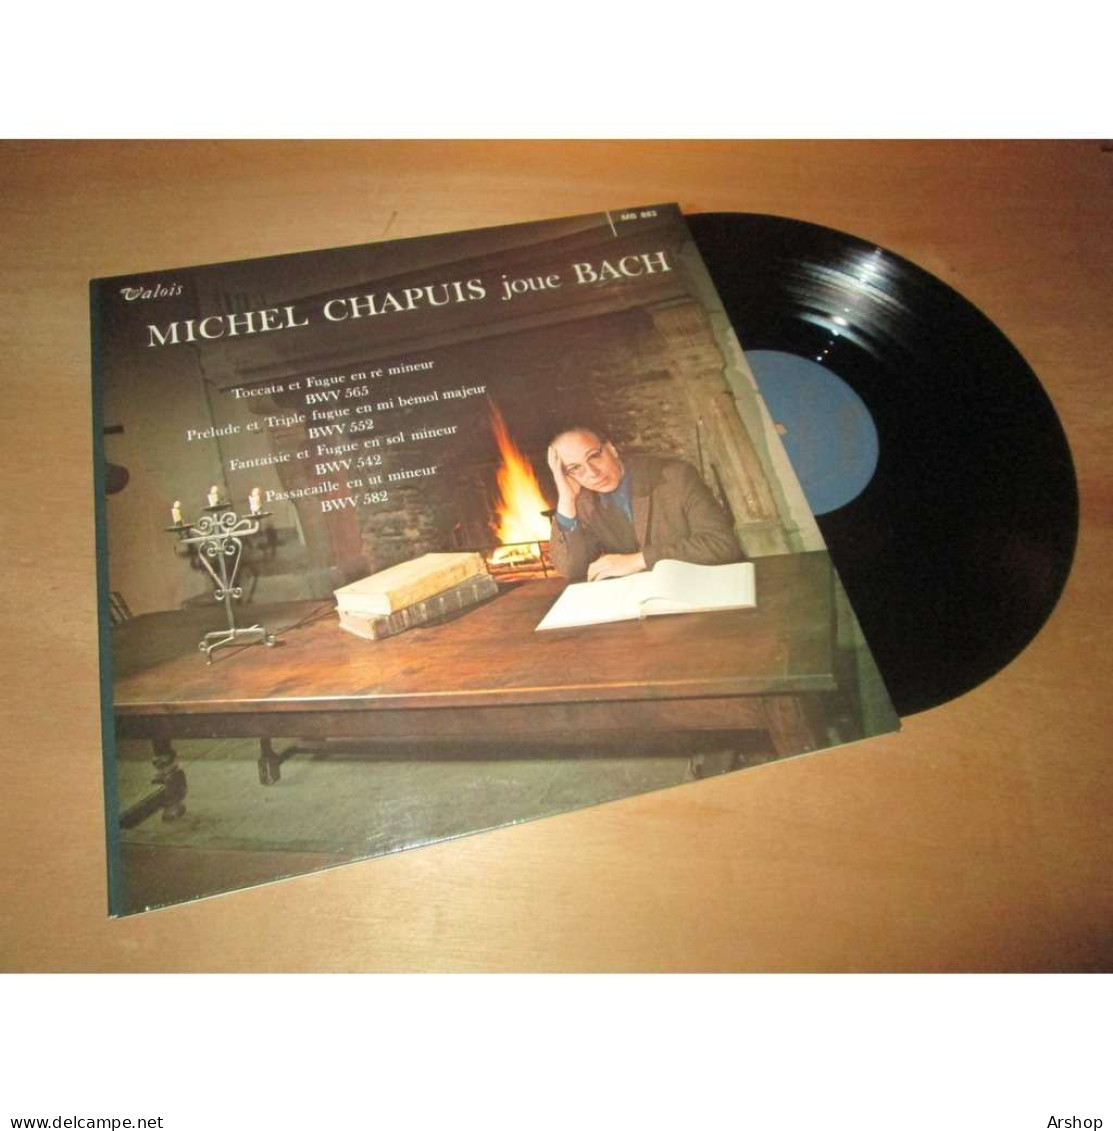 MICHEL CHAPUIS Joue BACH -  VALOIS MB 883 Lp - Klassiekers